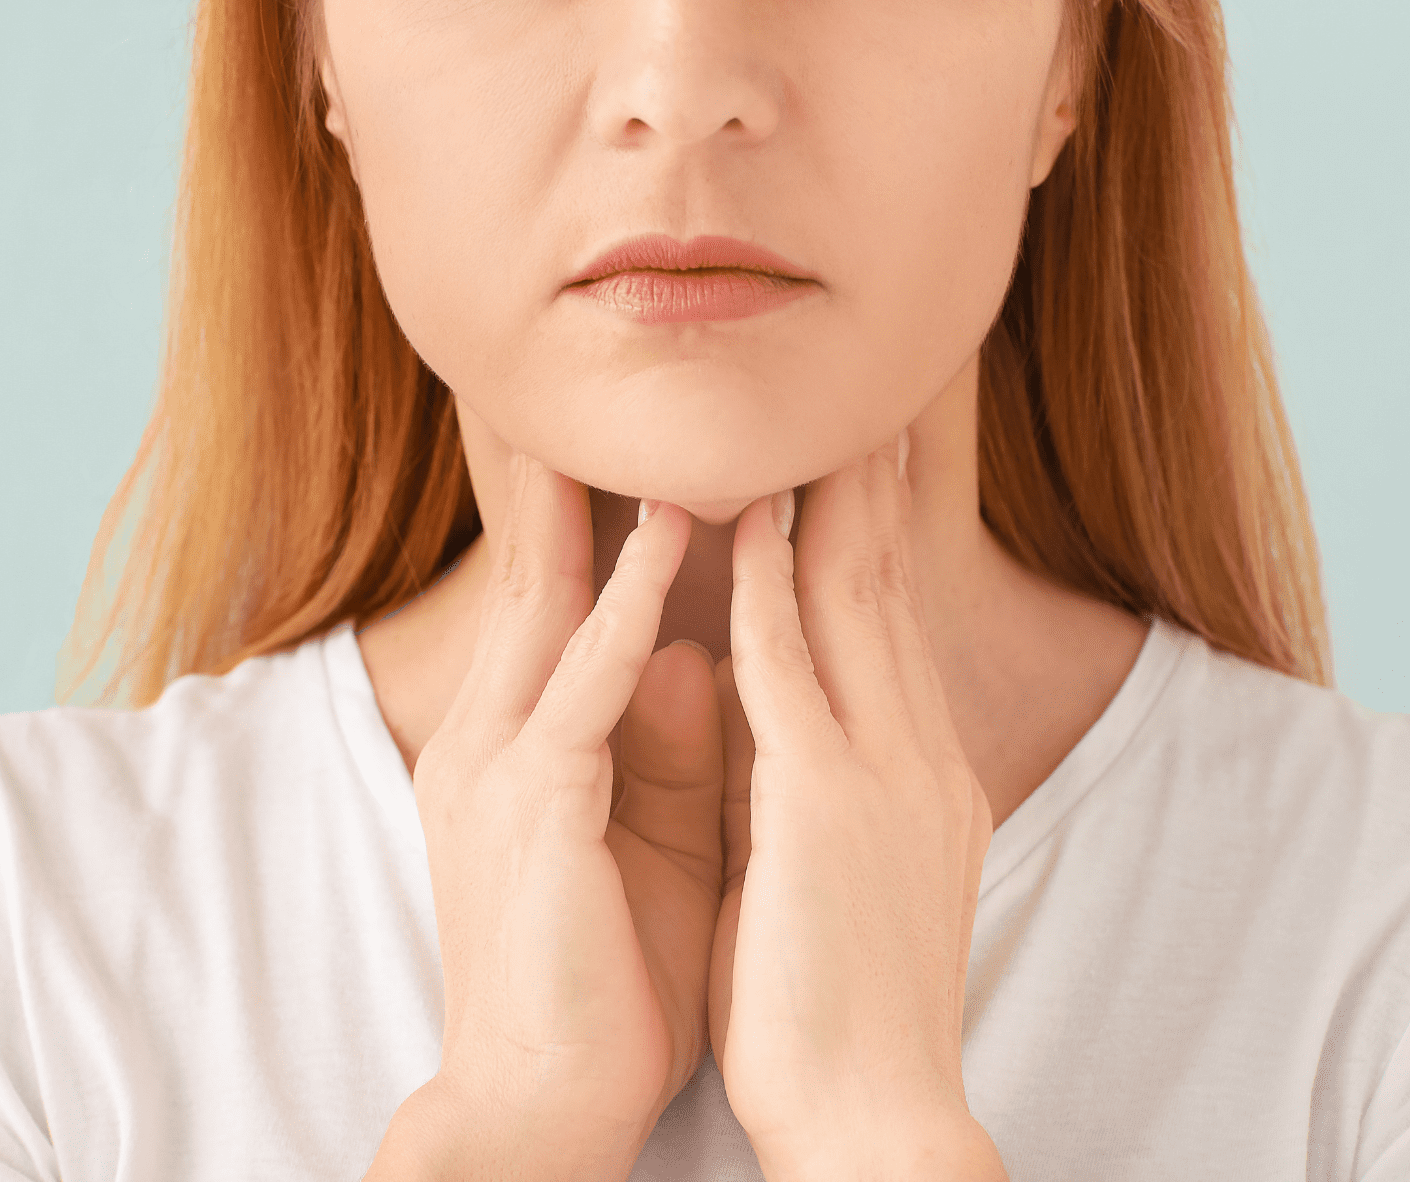 Thyroid image2 website